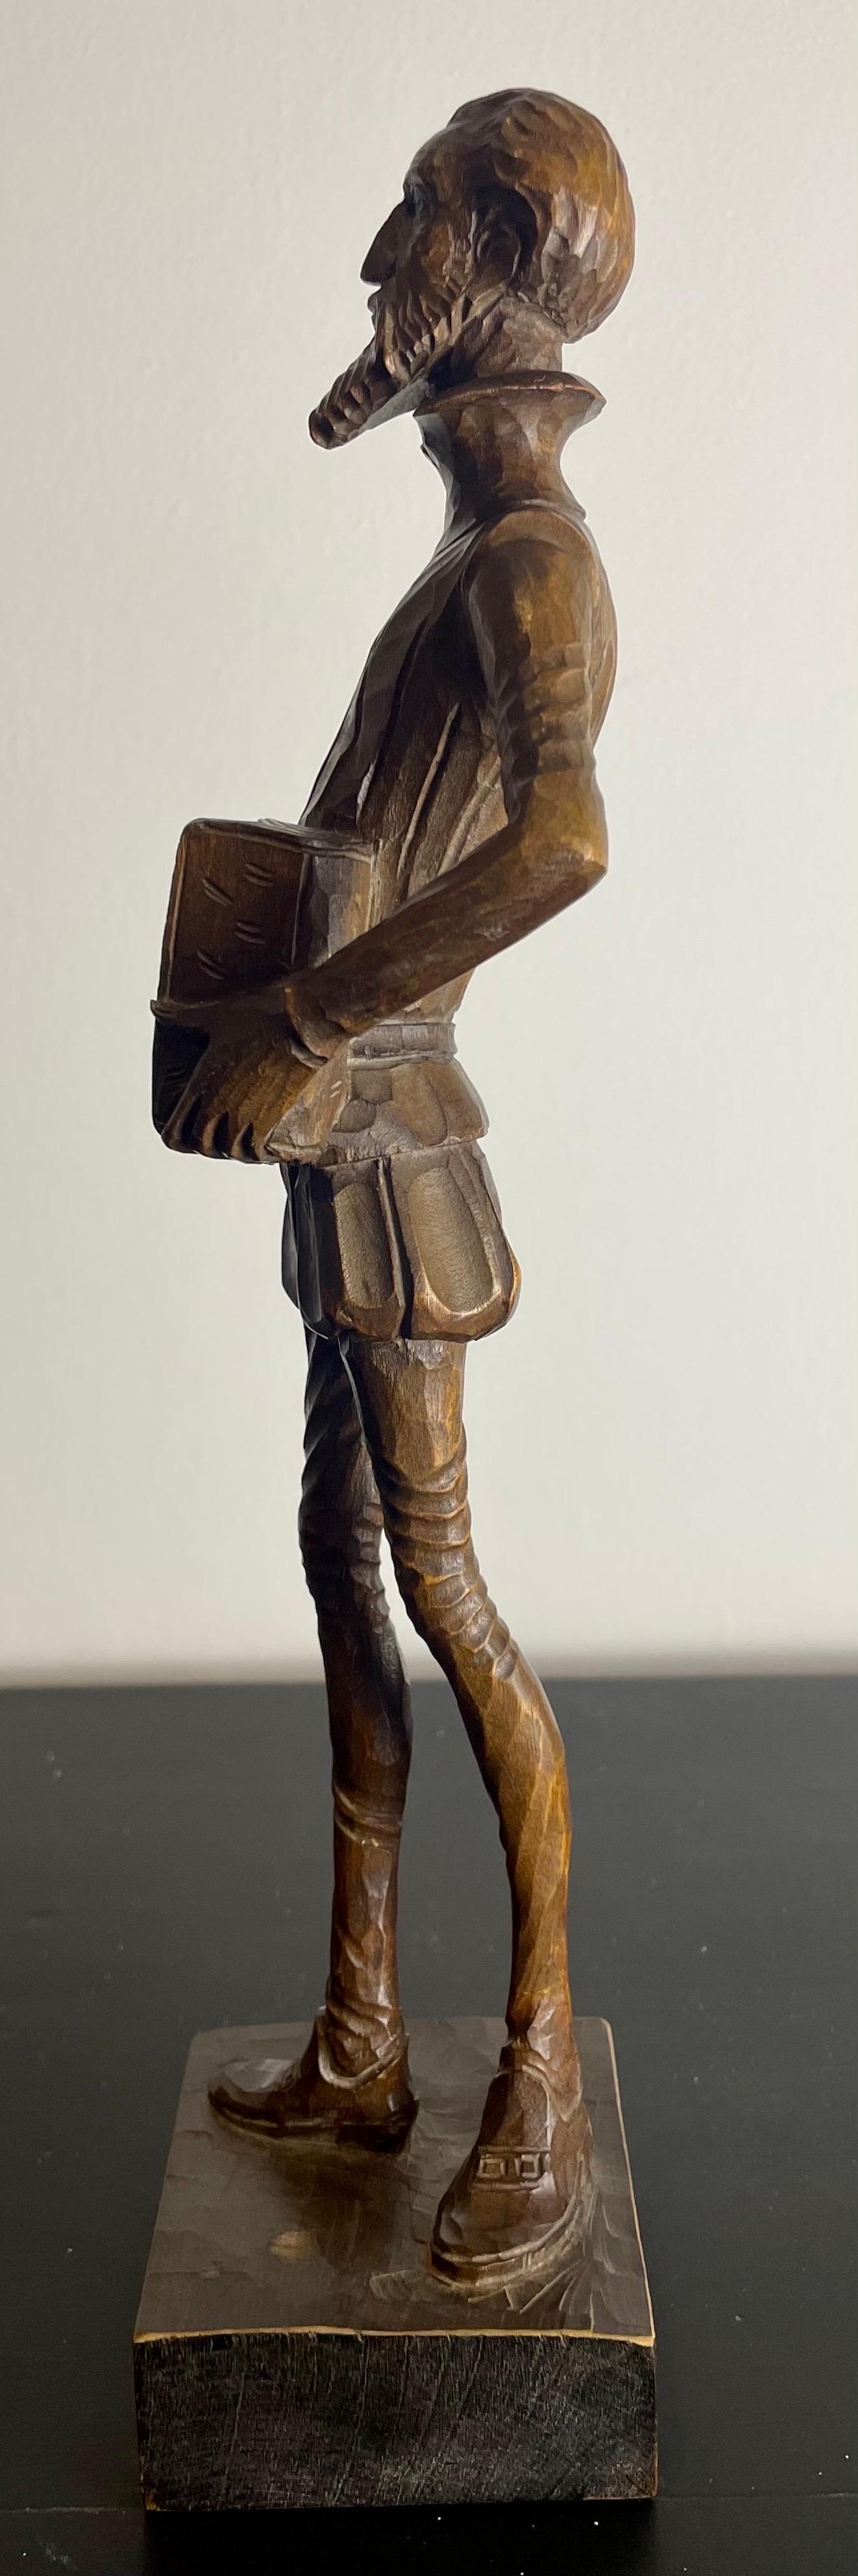 Hand-carved Don Quixote wooden statuette sculpture - Spain 19th Art Nouveau 2